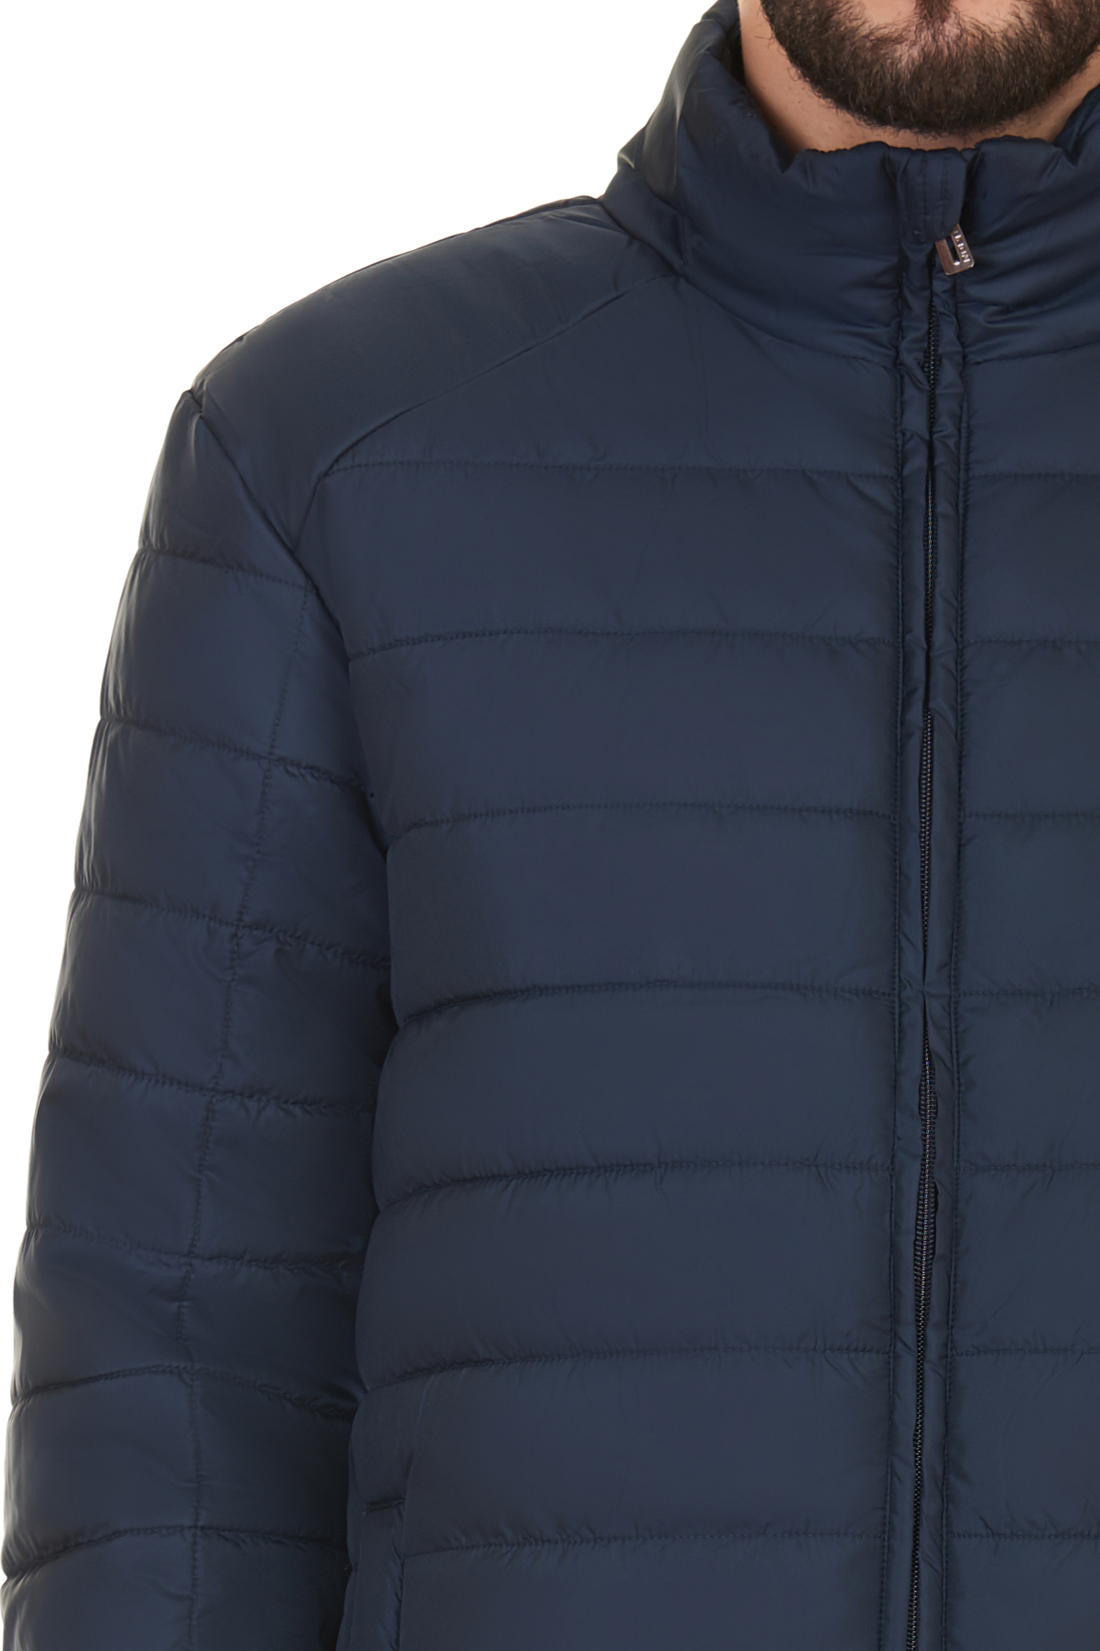 Базовая куртка (арт. baon B537701), размер XXL, цвет синий Базовая куртка (арт. baon B537701) - фото 4